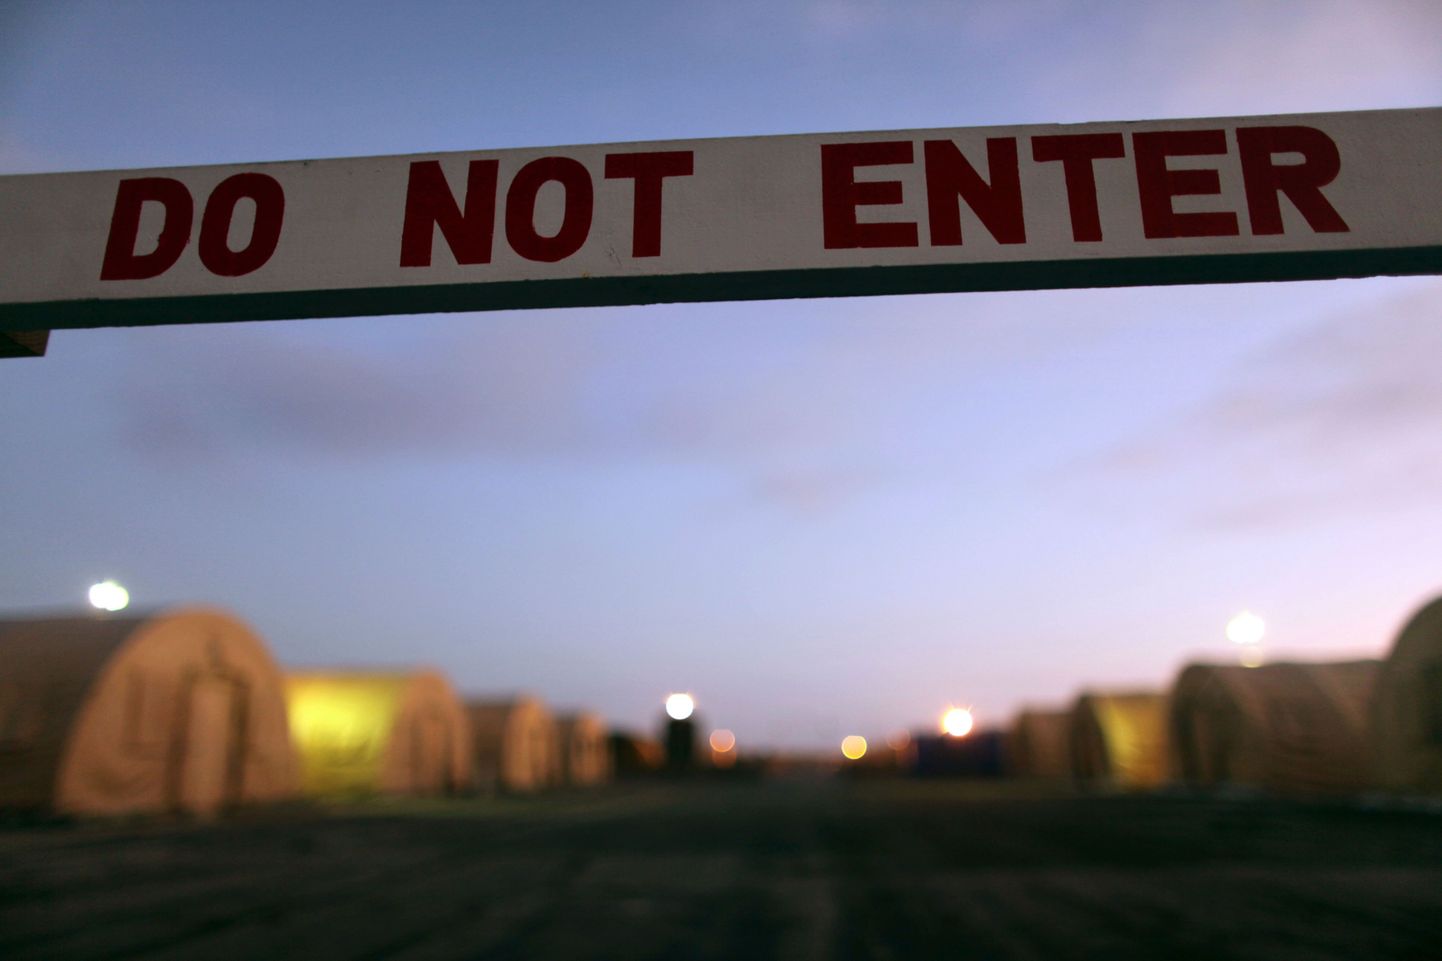 Guantanamo sõjaväebaasis asuv Camp Justice, kus toimuvad sõjatribunalid terrorikahtlusaluste üle.